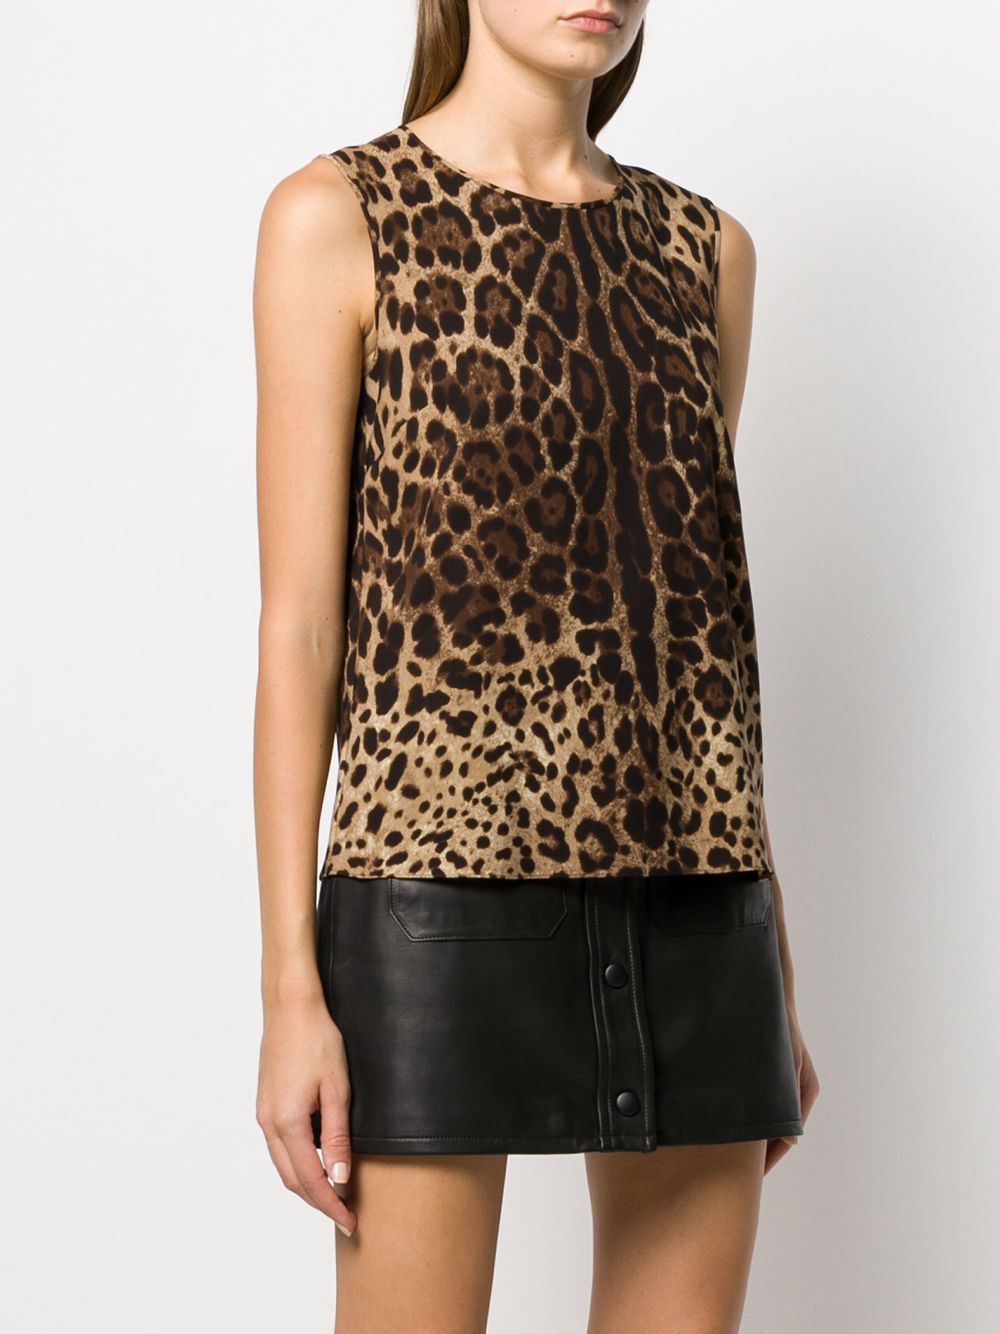 фото Dolce & Gabbana блузка с леопардовым принтом